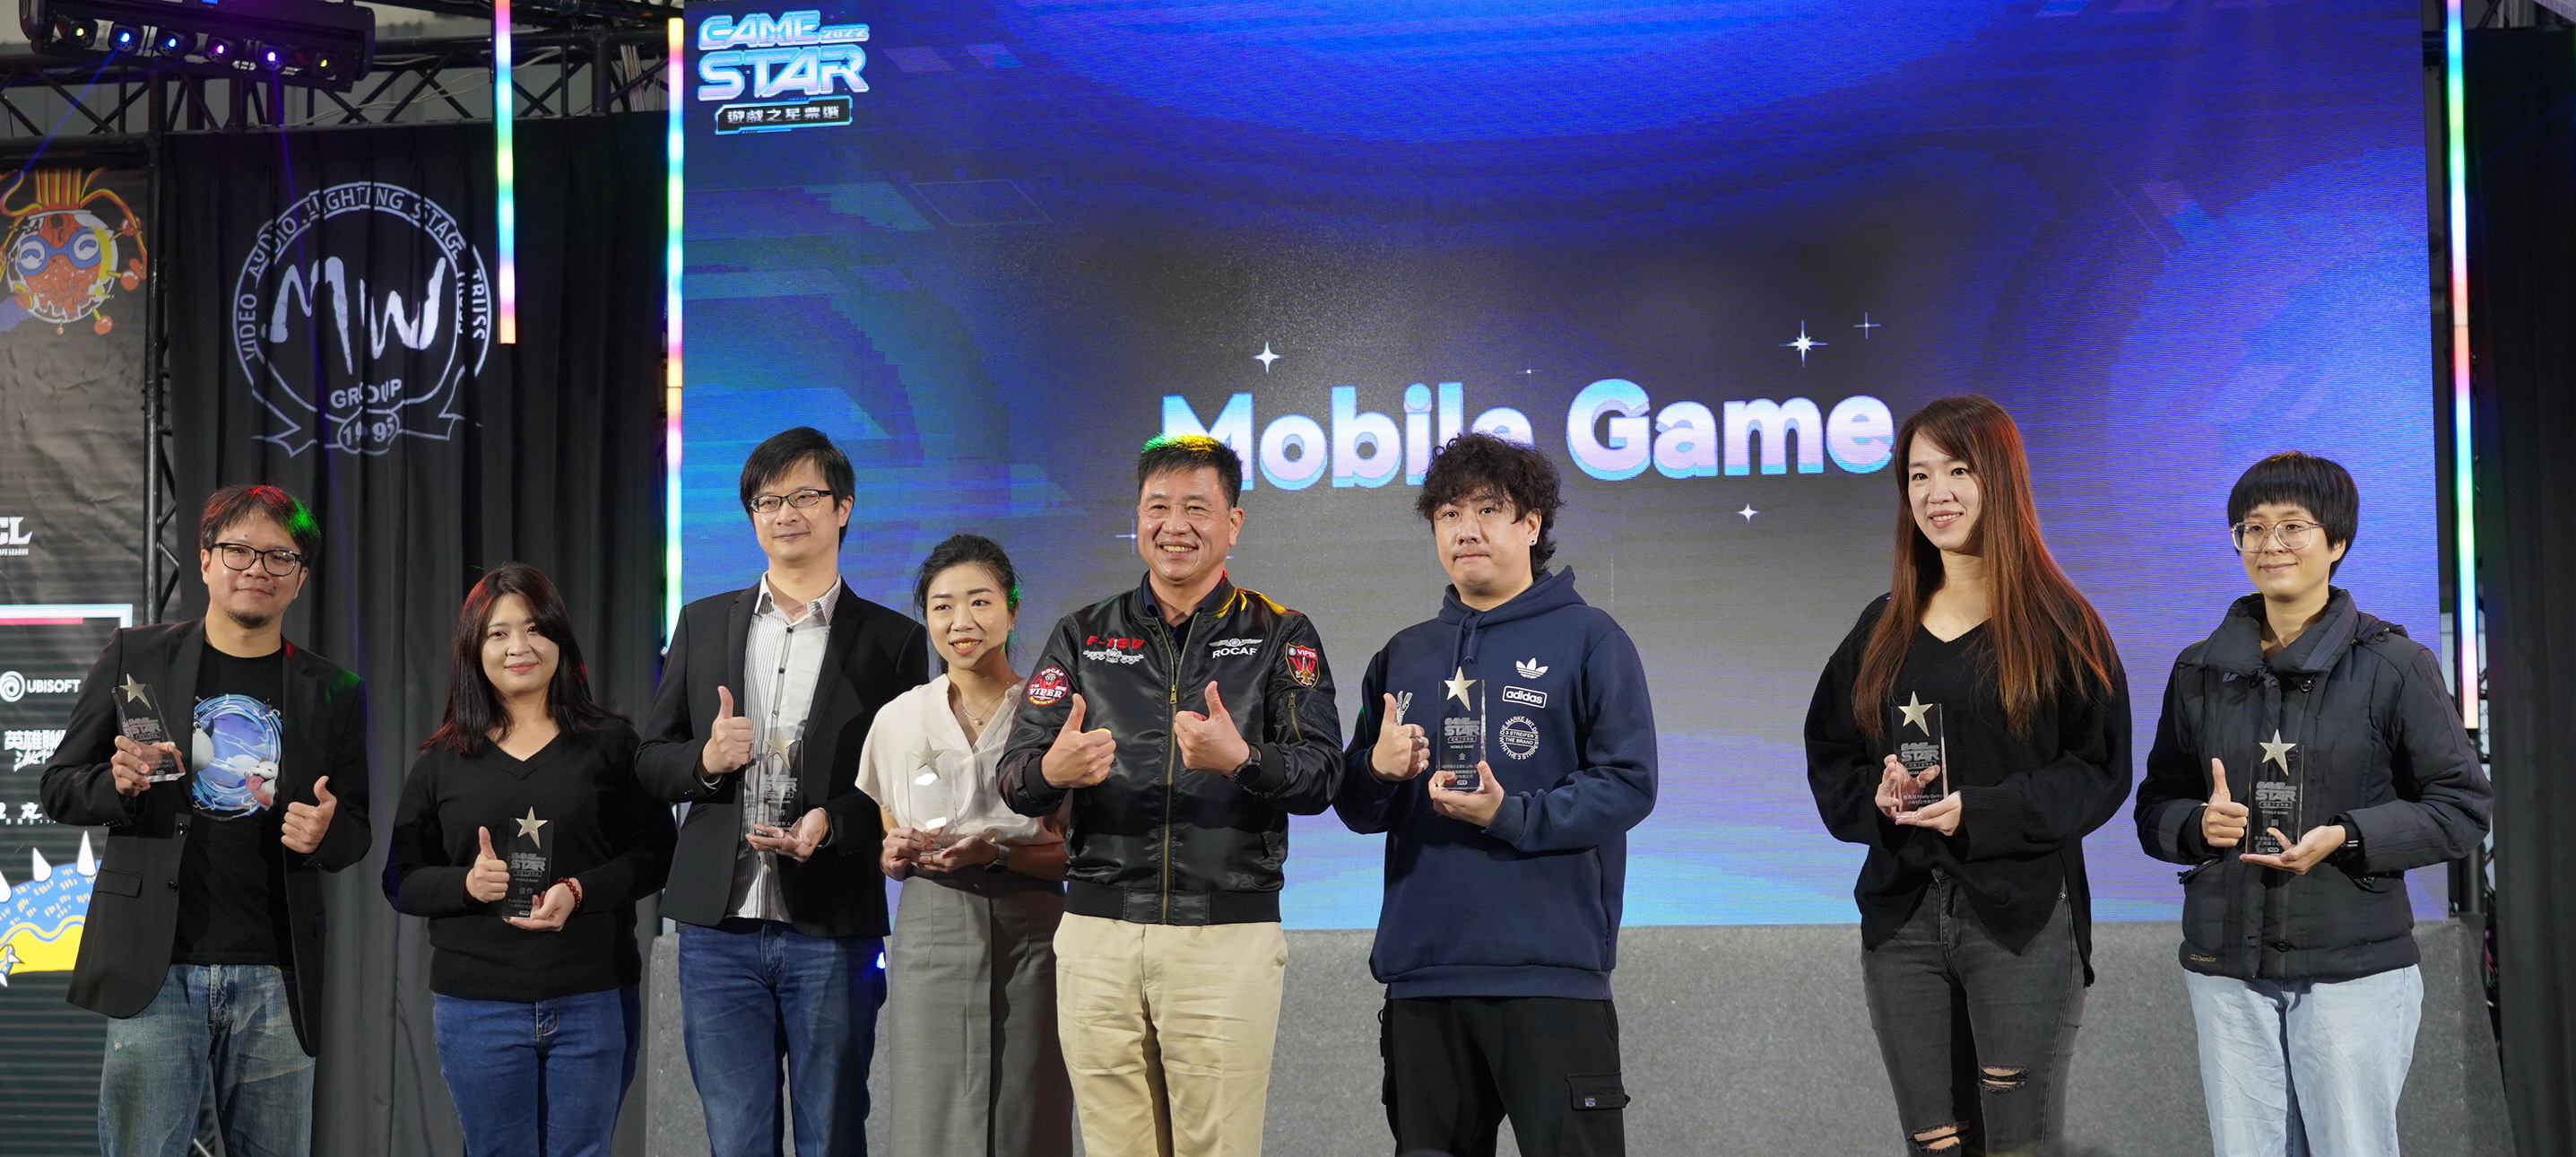 「GAME STAR 游戏之星」揭晓得奖名单 《艾尔登法环》夺 PC、TV 金奖插图4